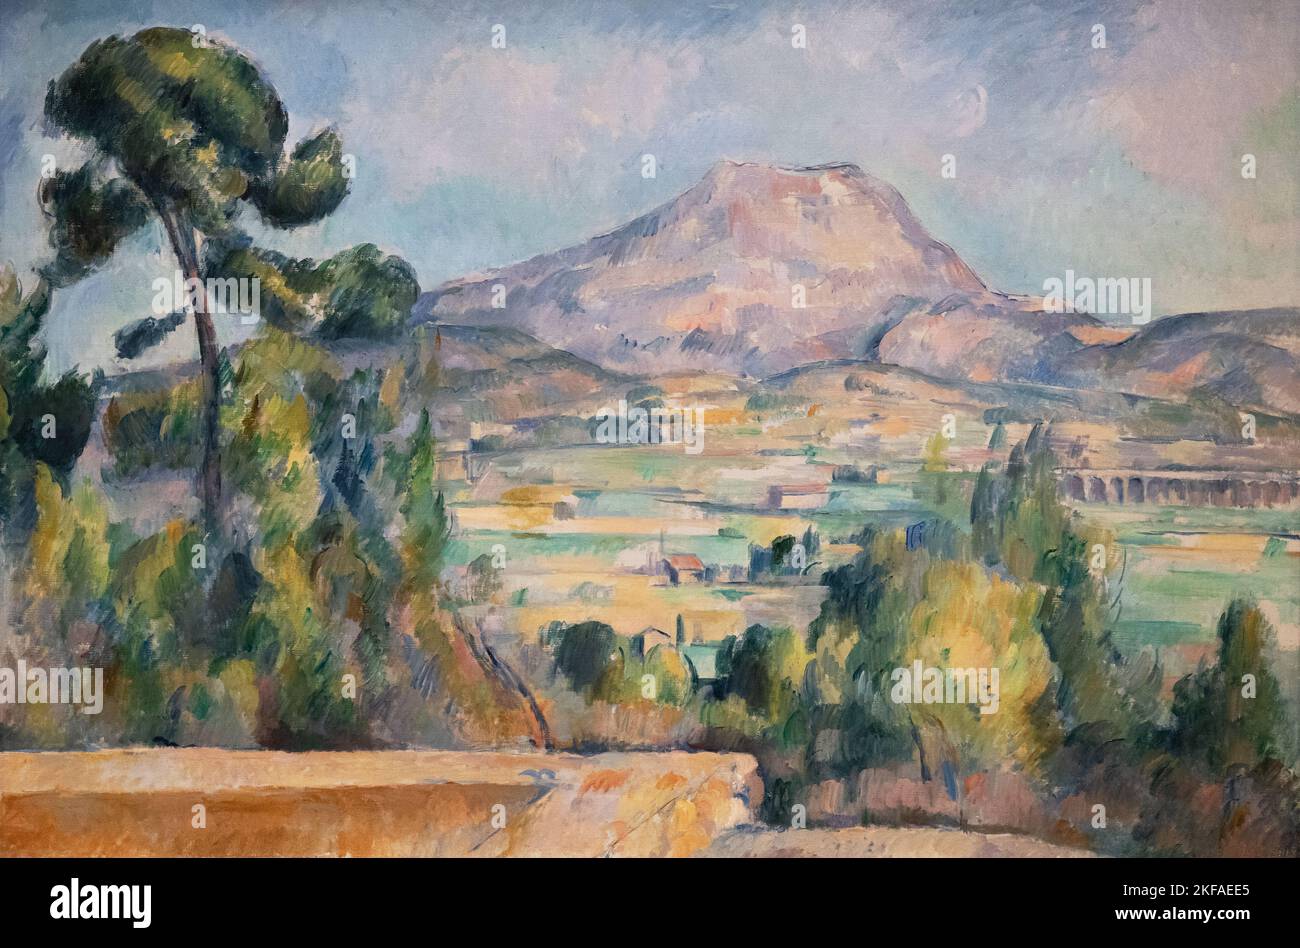 Paul Cézanne peinture - montagne Sainte victoire c 1890 paysage huile peinture, Sud de la France. Peintures post-impressionnisme, 19th siècle Banque D'Images